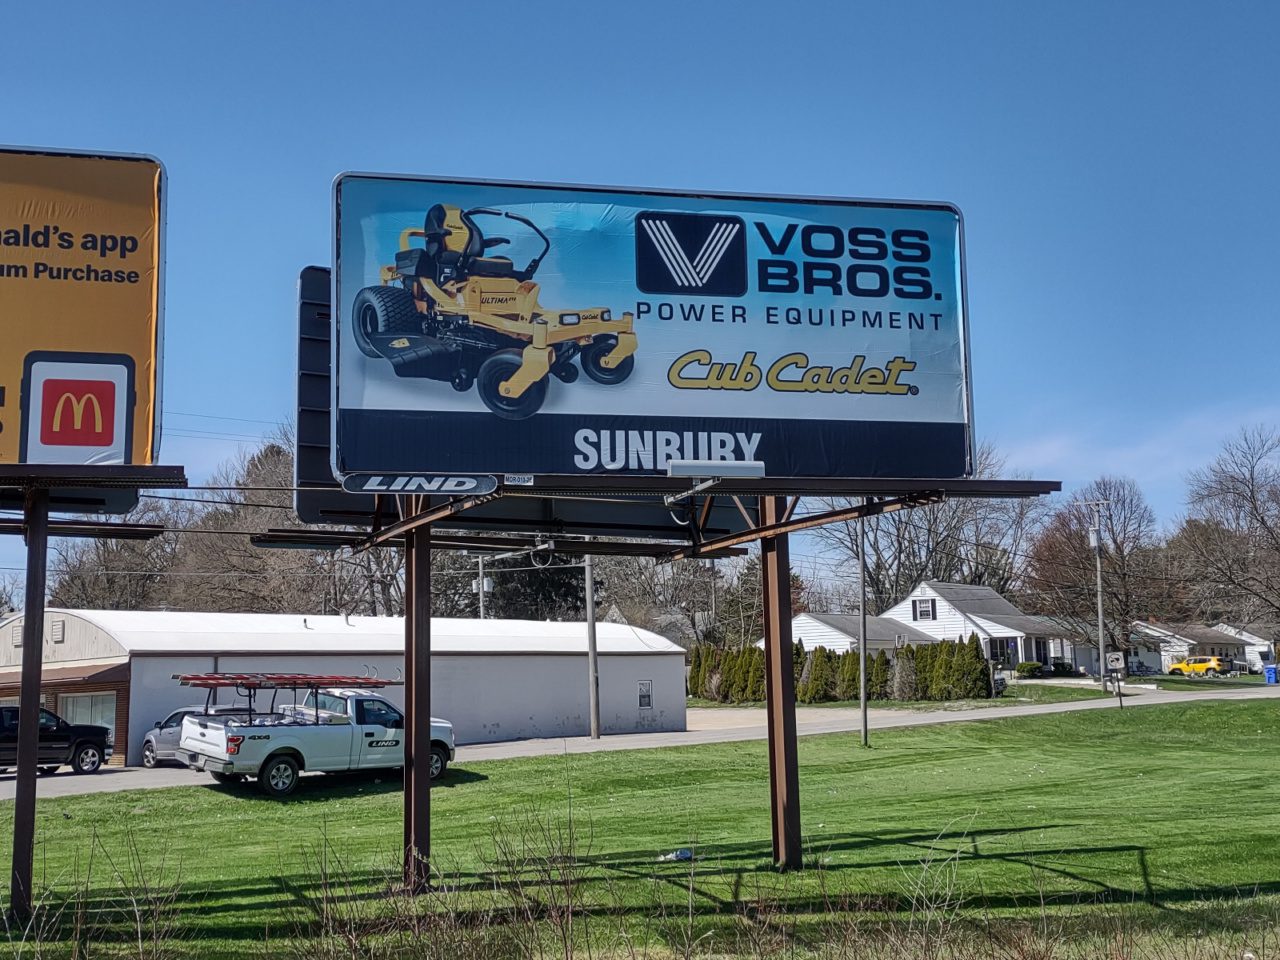 Voss Brothers billboard, Cub Cadet Billboard, lawn mower billboard